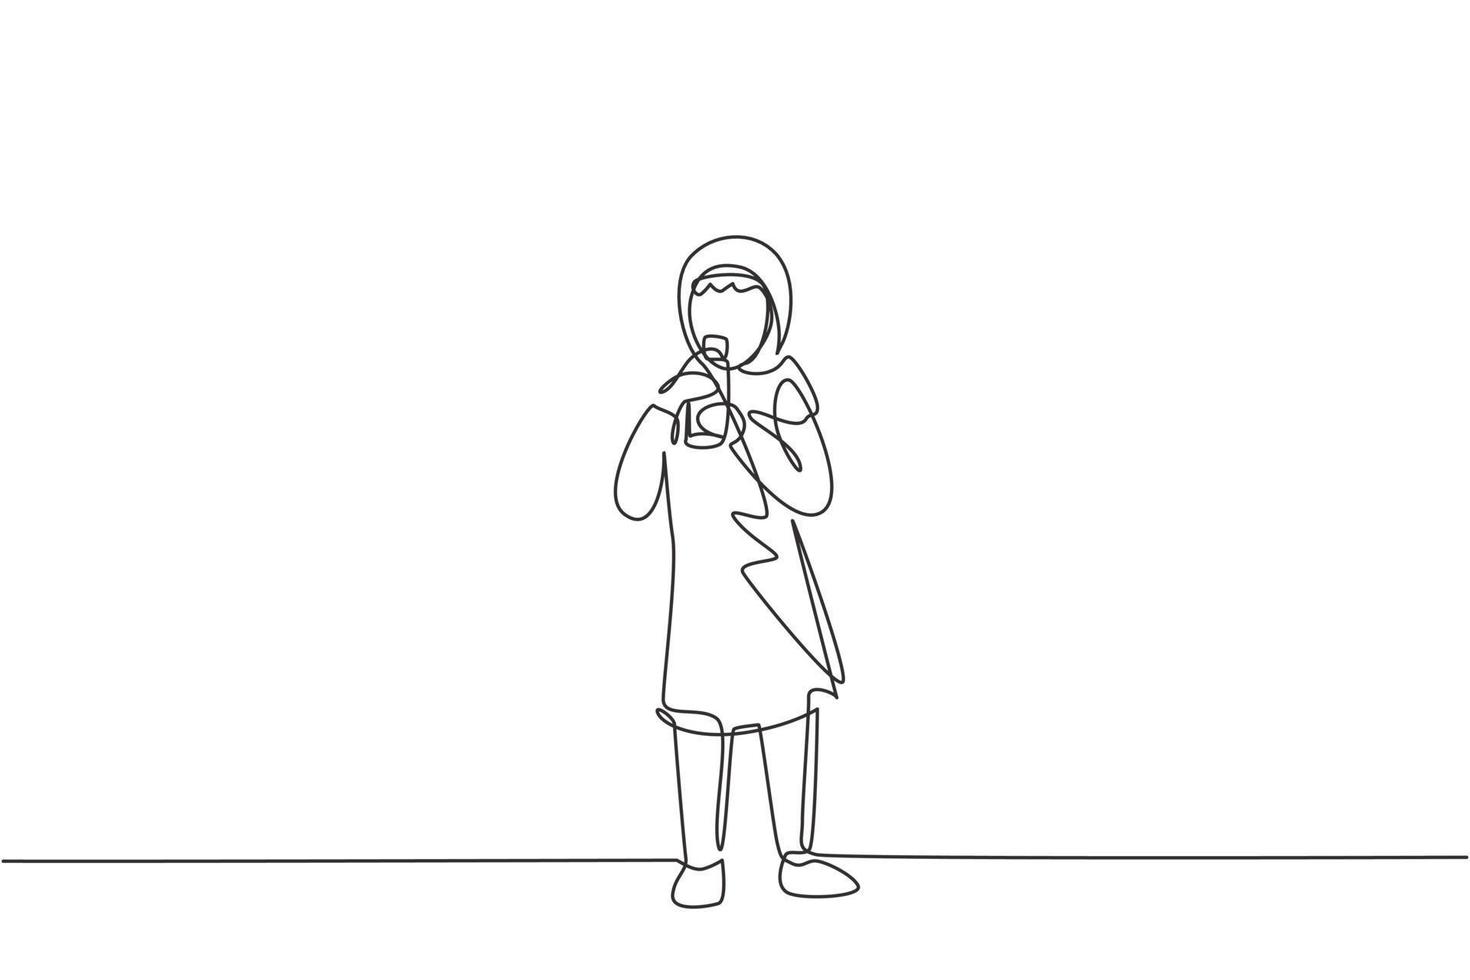 único desenho de linha contínua garota árabe em pé enquanto bebe um copo de leite para cumprir a nutrição do corpo. conceito de estilos de vida saudáveis para crianças. ilustração em vetor desenho gráfico de uma linha